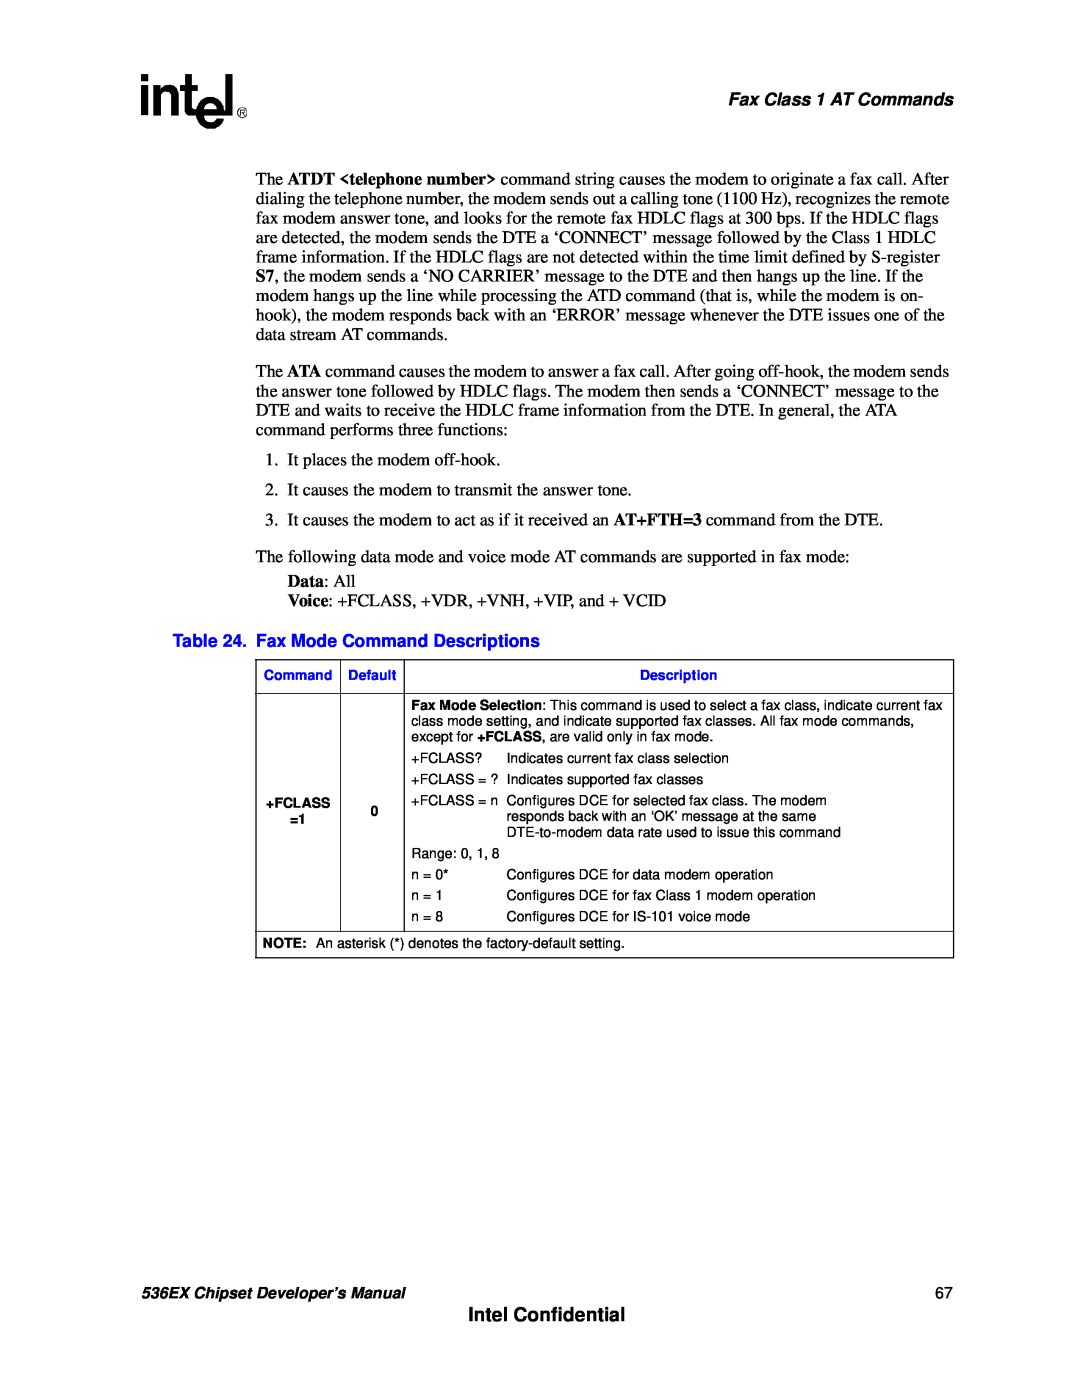 Intel 537EX manual Intel Confidential, Fax Class 1 AT Commands, Fax Mode Command Descriptions 